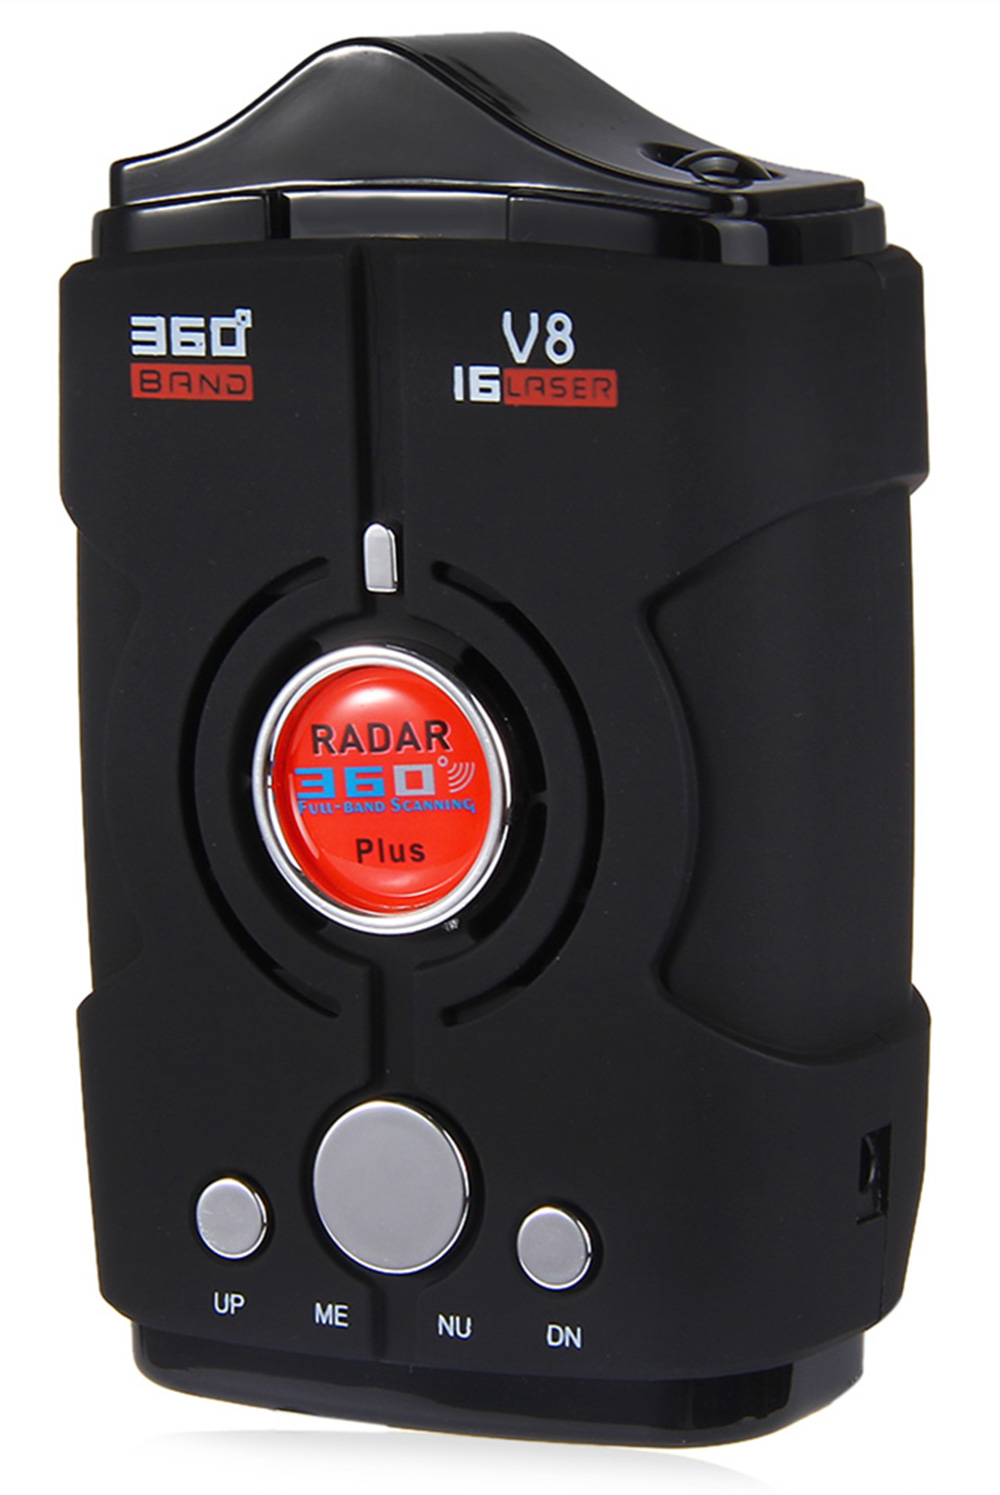 Car Trucker Speed V8 Radar Detector Voice Alert Warning 16 Band Auto 360 Degrees